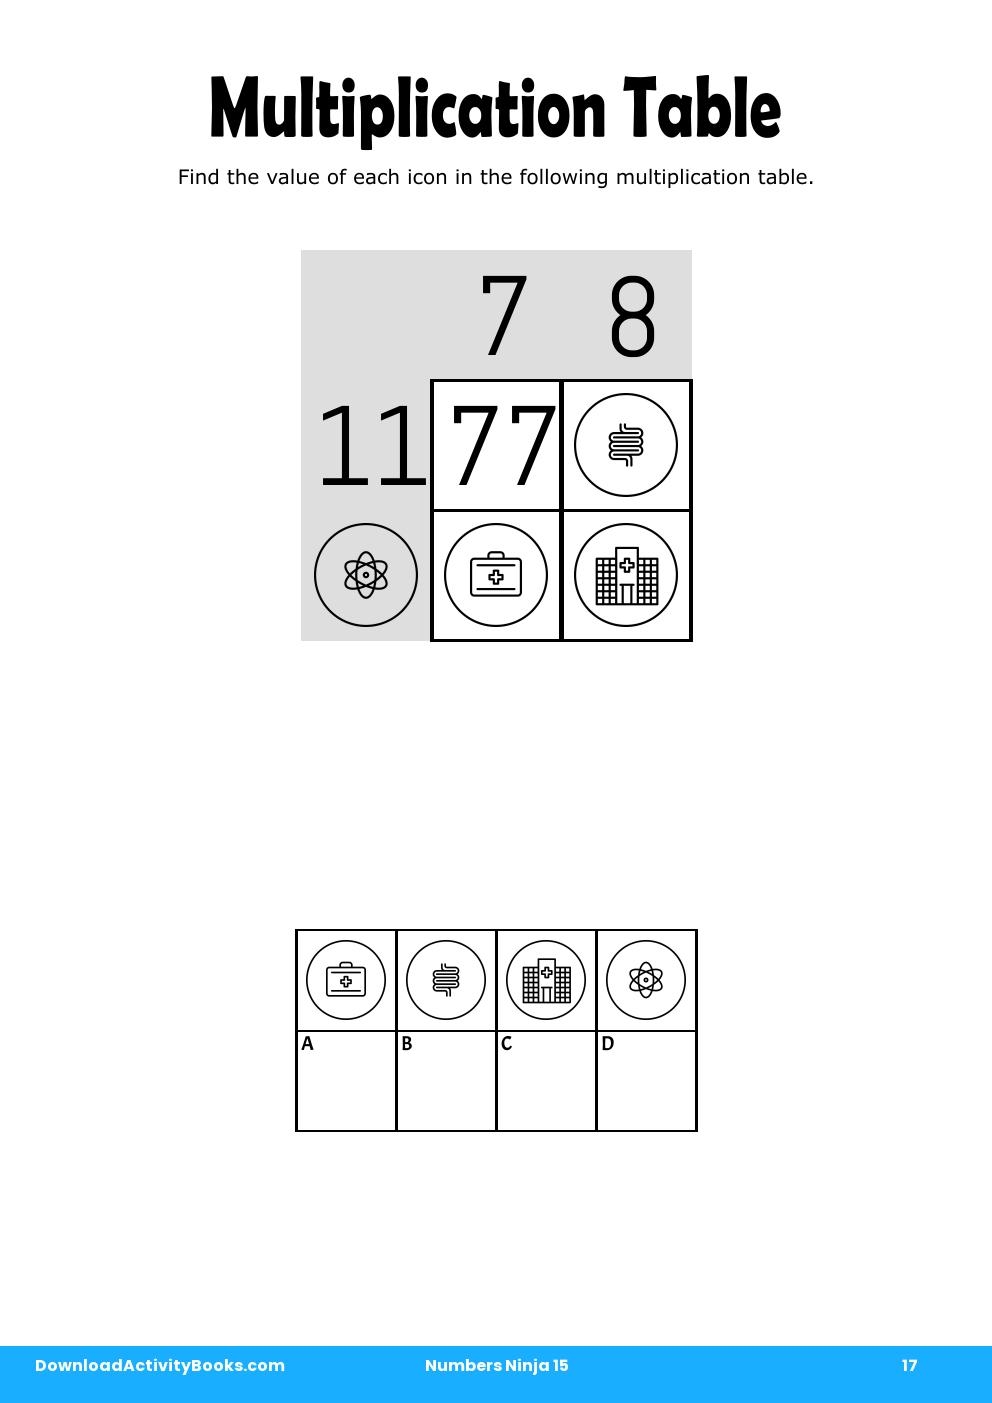 Multiplication Table in Numbers Ninja 15